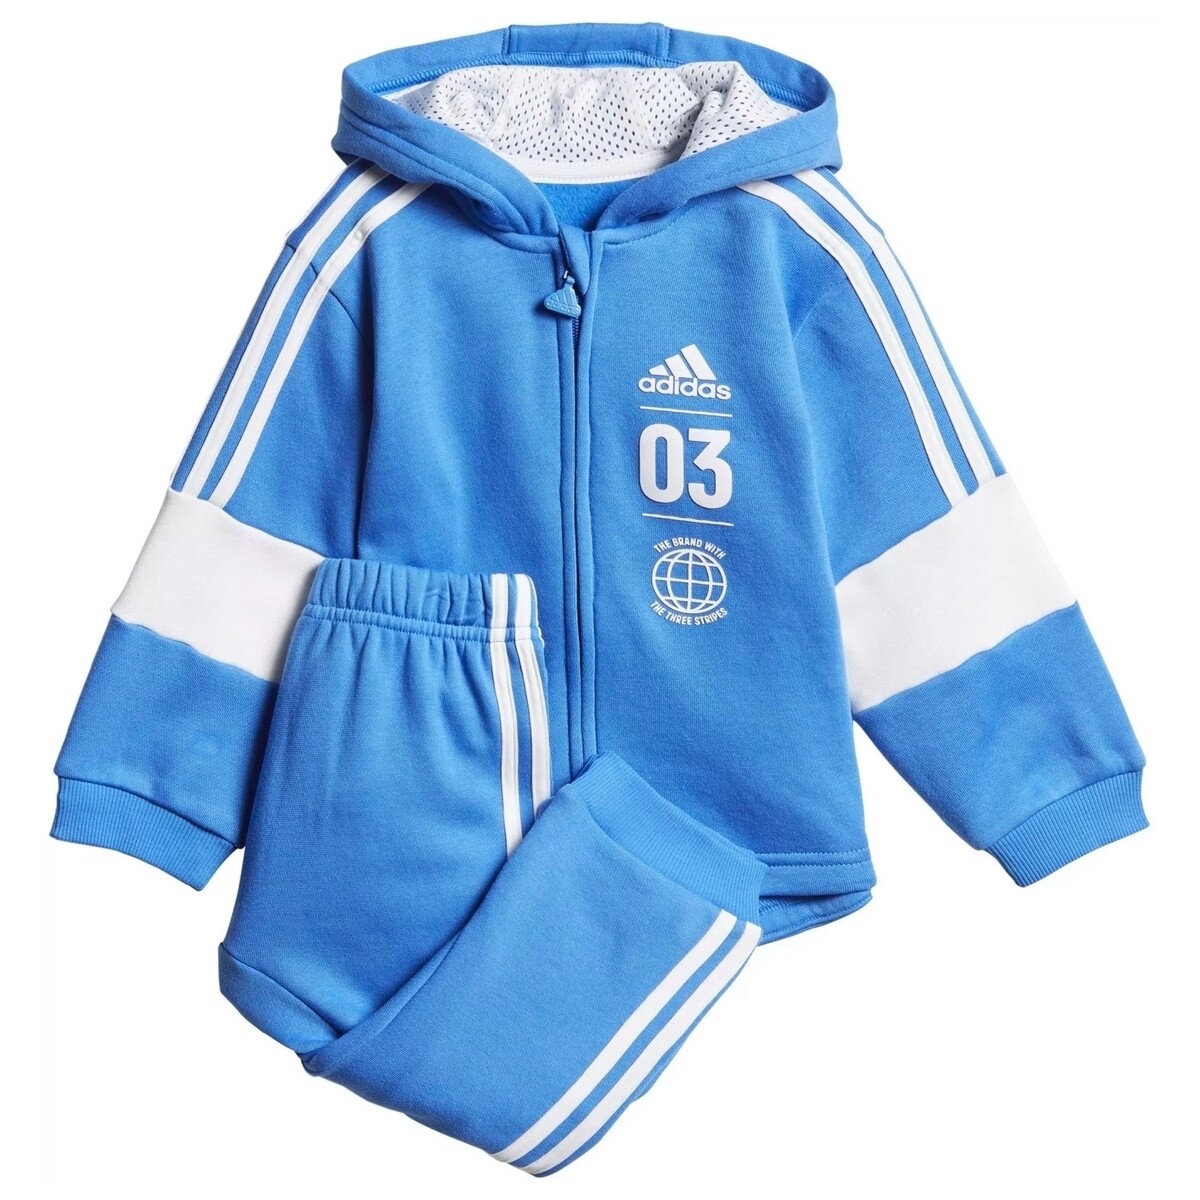 Kleidung Kinder Jogginganzüge adidas Originals DV1276 Blau